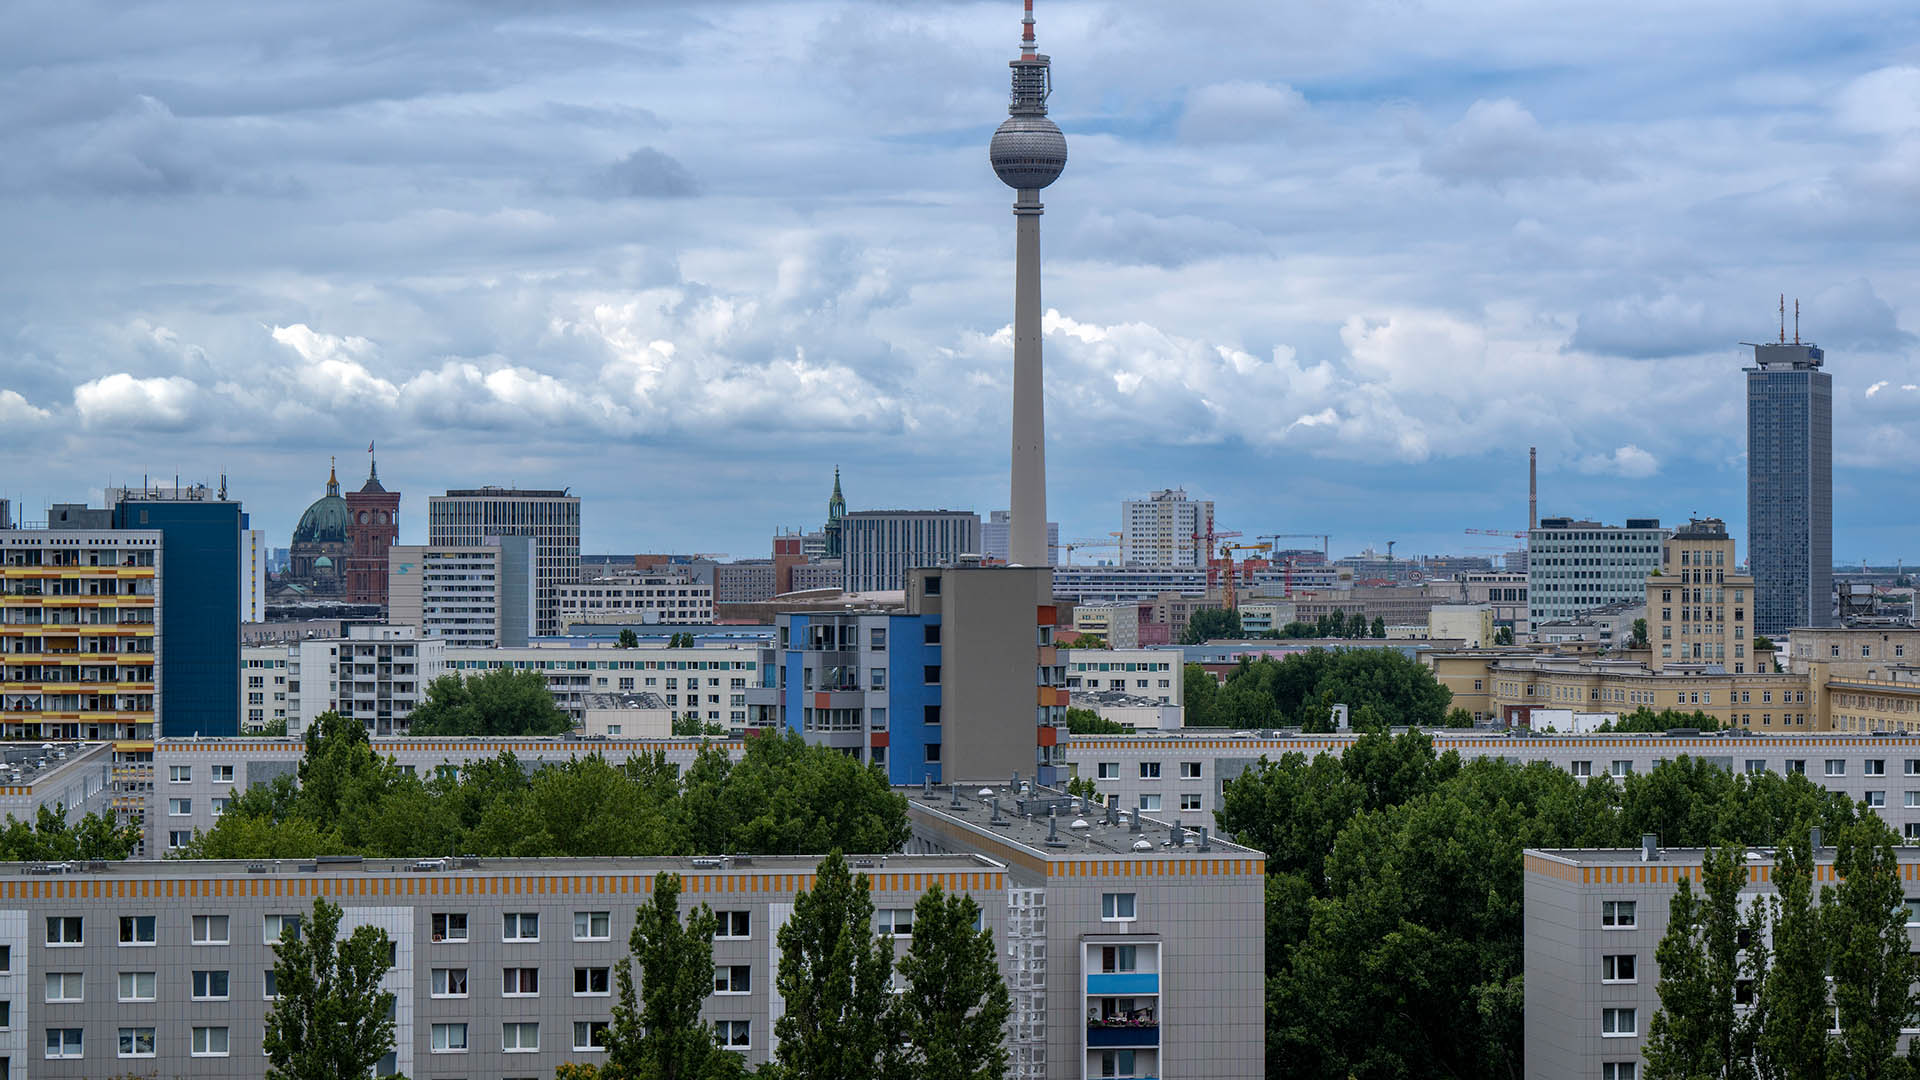 Symbolbild: Der Fernsehturm ragt in den Himmel vor der Kulisse zahlreicher Wohnhäuser im Zentrum Berlins. (Quelle: dpa/Skolimowska)